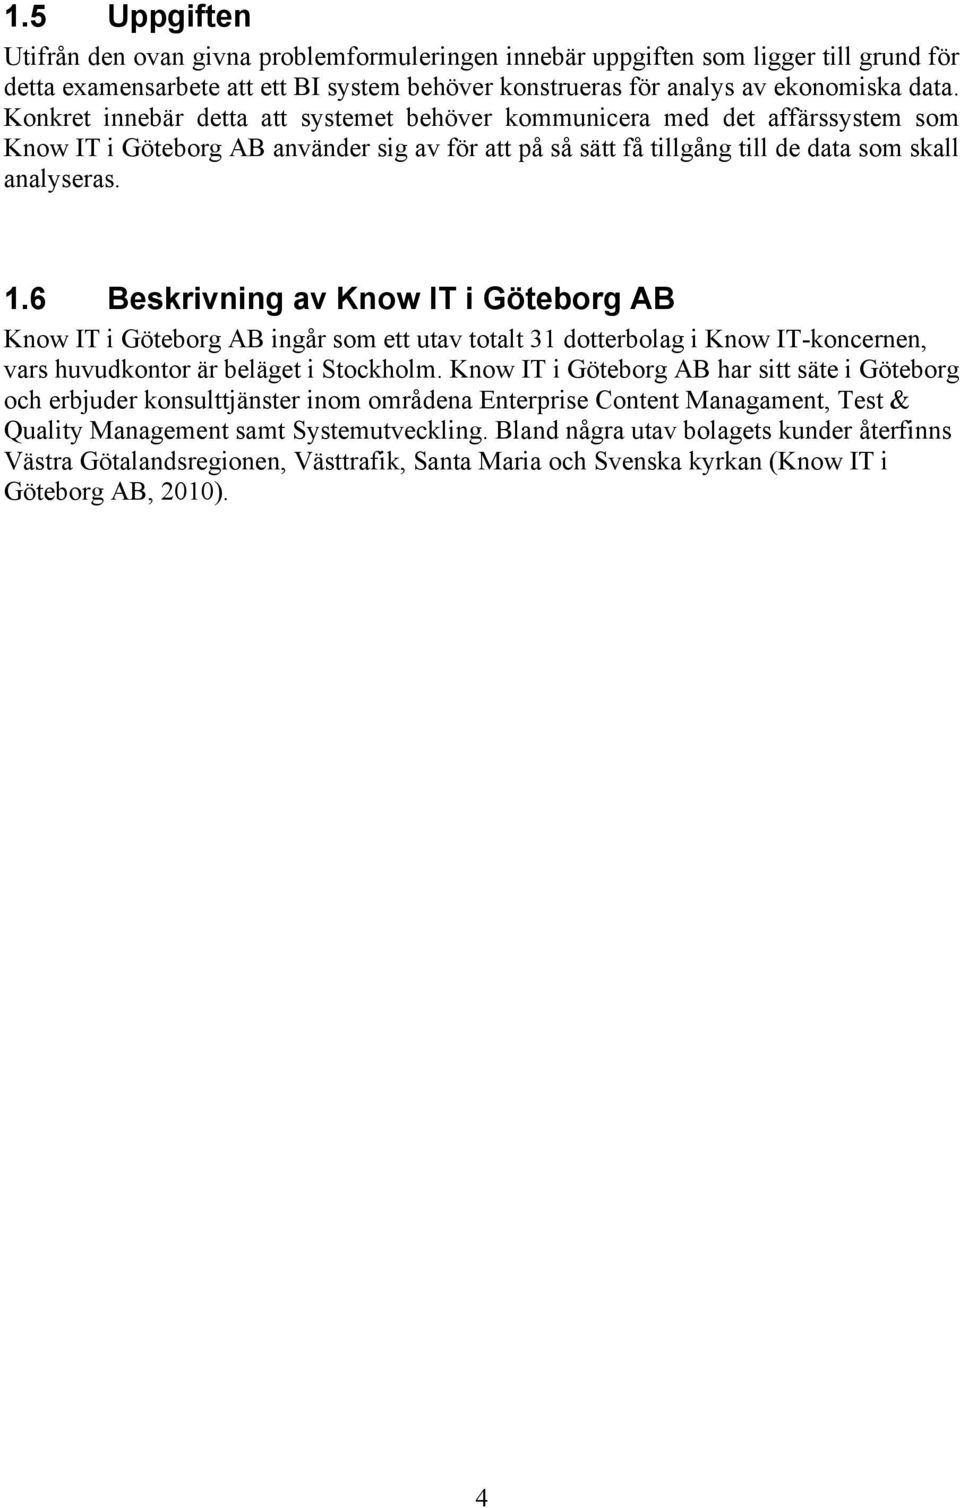 6 Beskrivning av Know IT i Göteborg AB Know IT i Göteborg AB ingår som ett utav totalt 31 dotterbolag i Know IT-koncernen, vars huvudkontor är beläget i Stockholm.